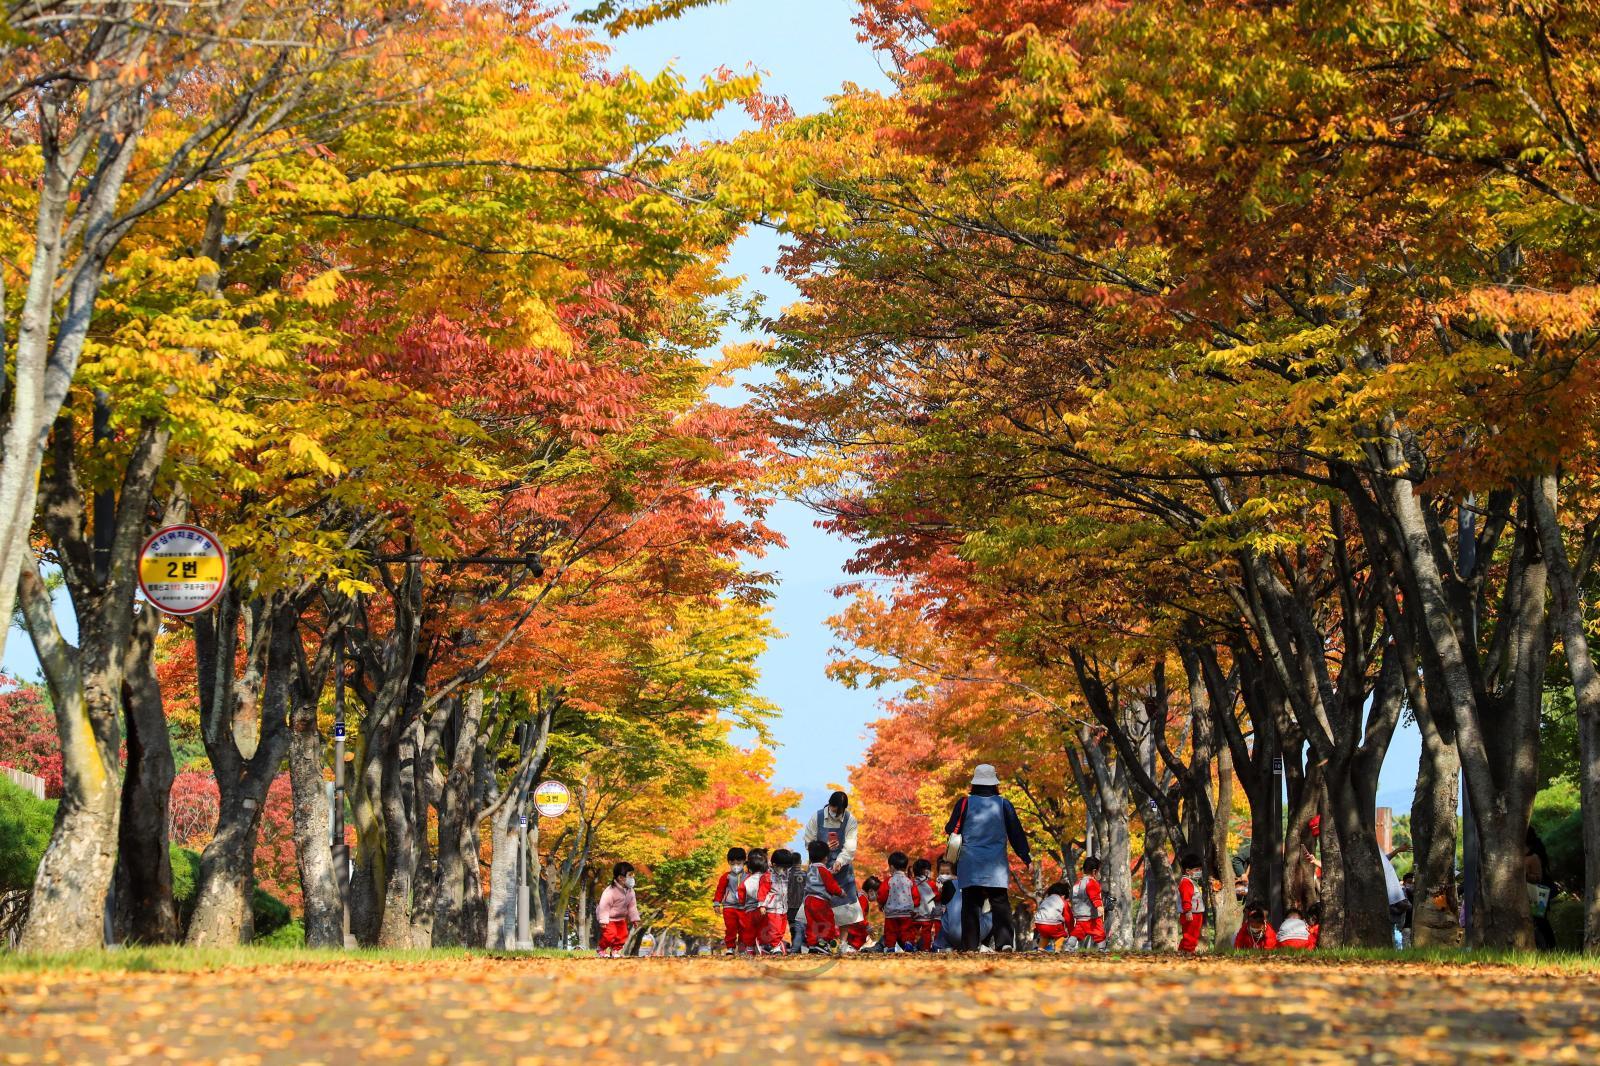 울산체육공원 조망산책로 가을단풍 - 울산9경 의 사진